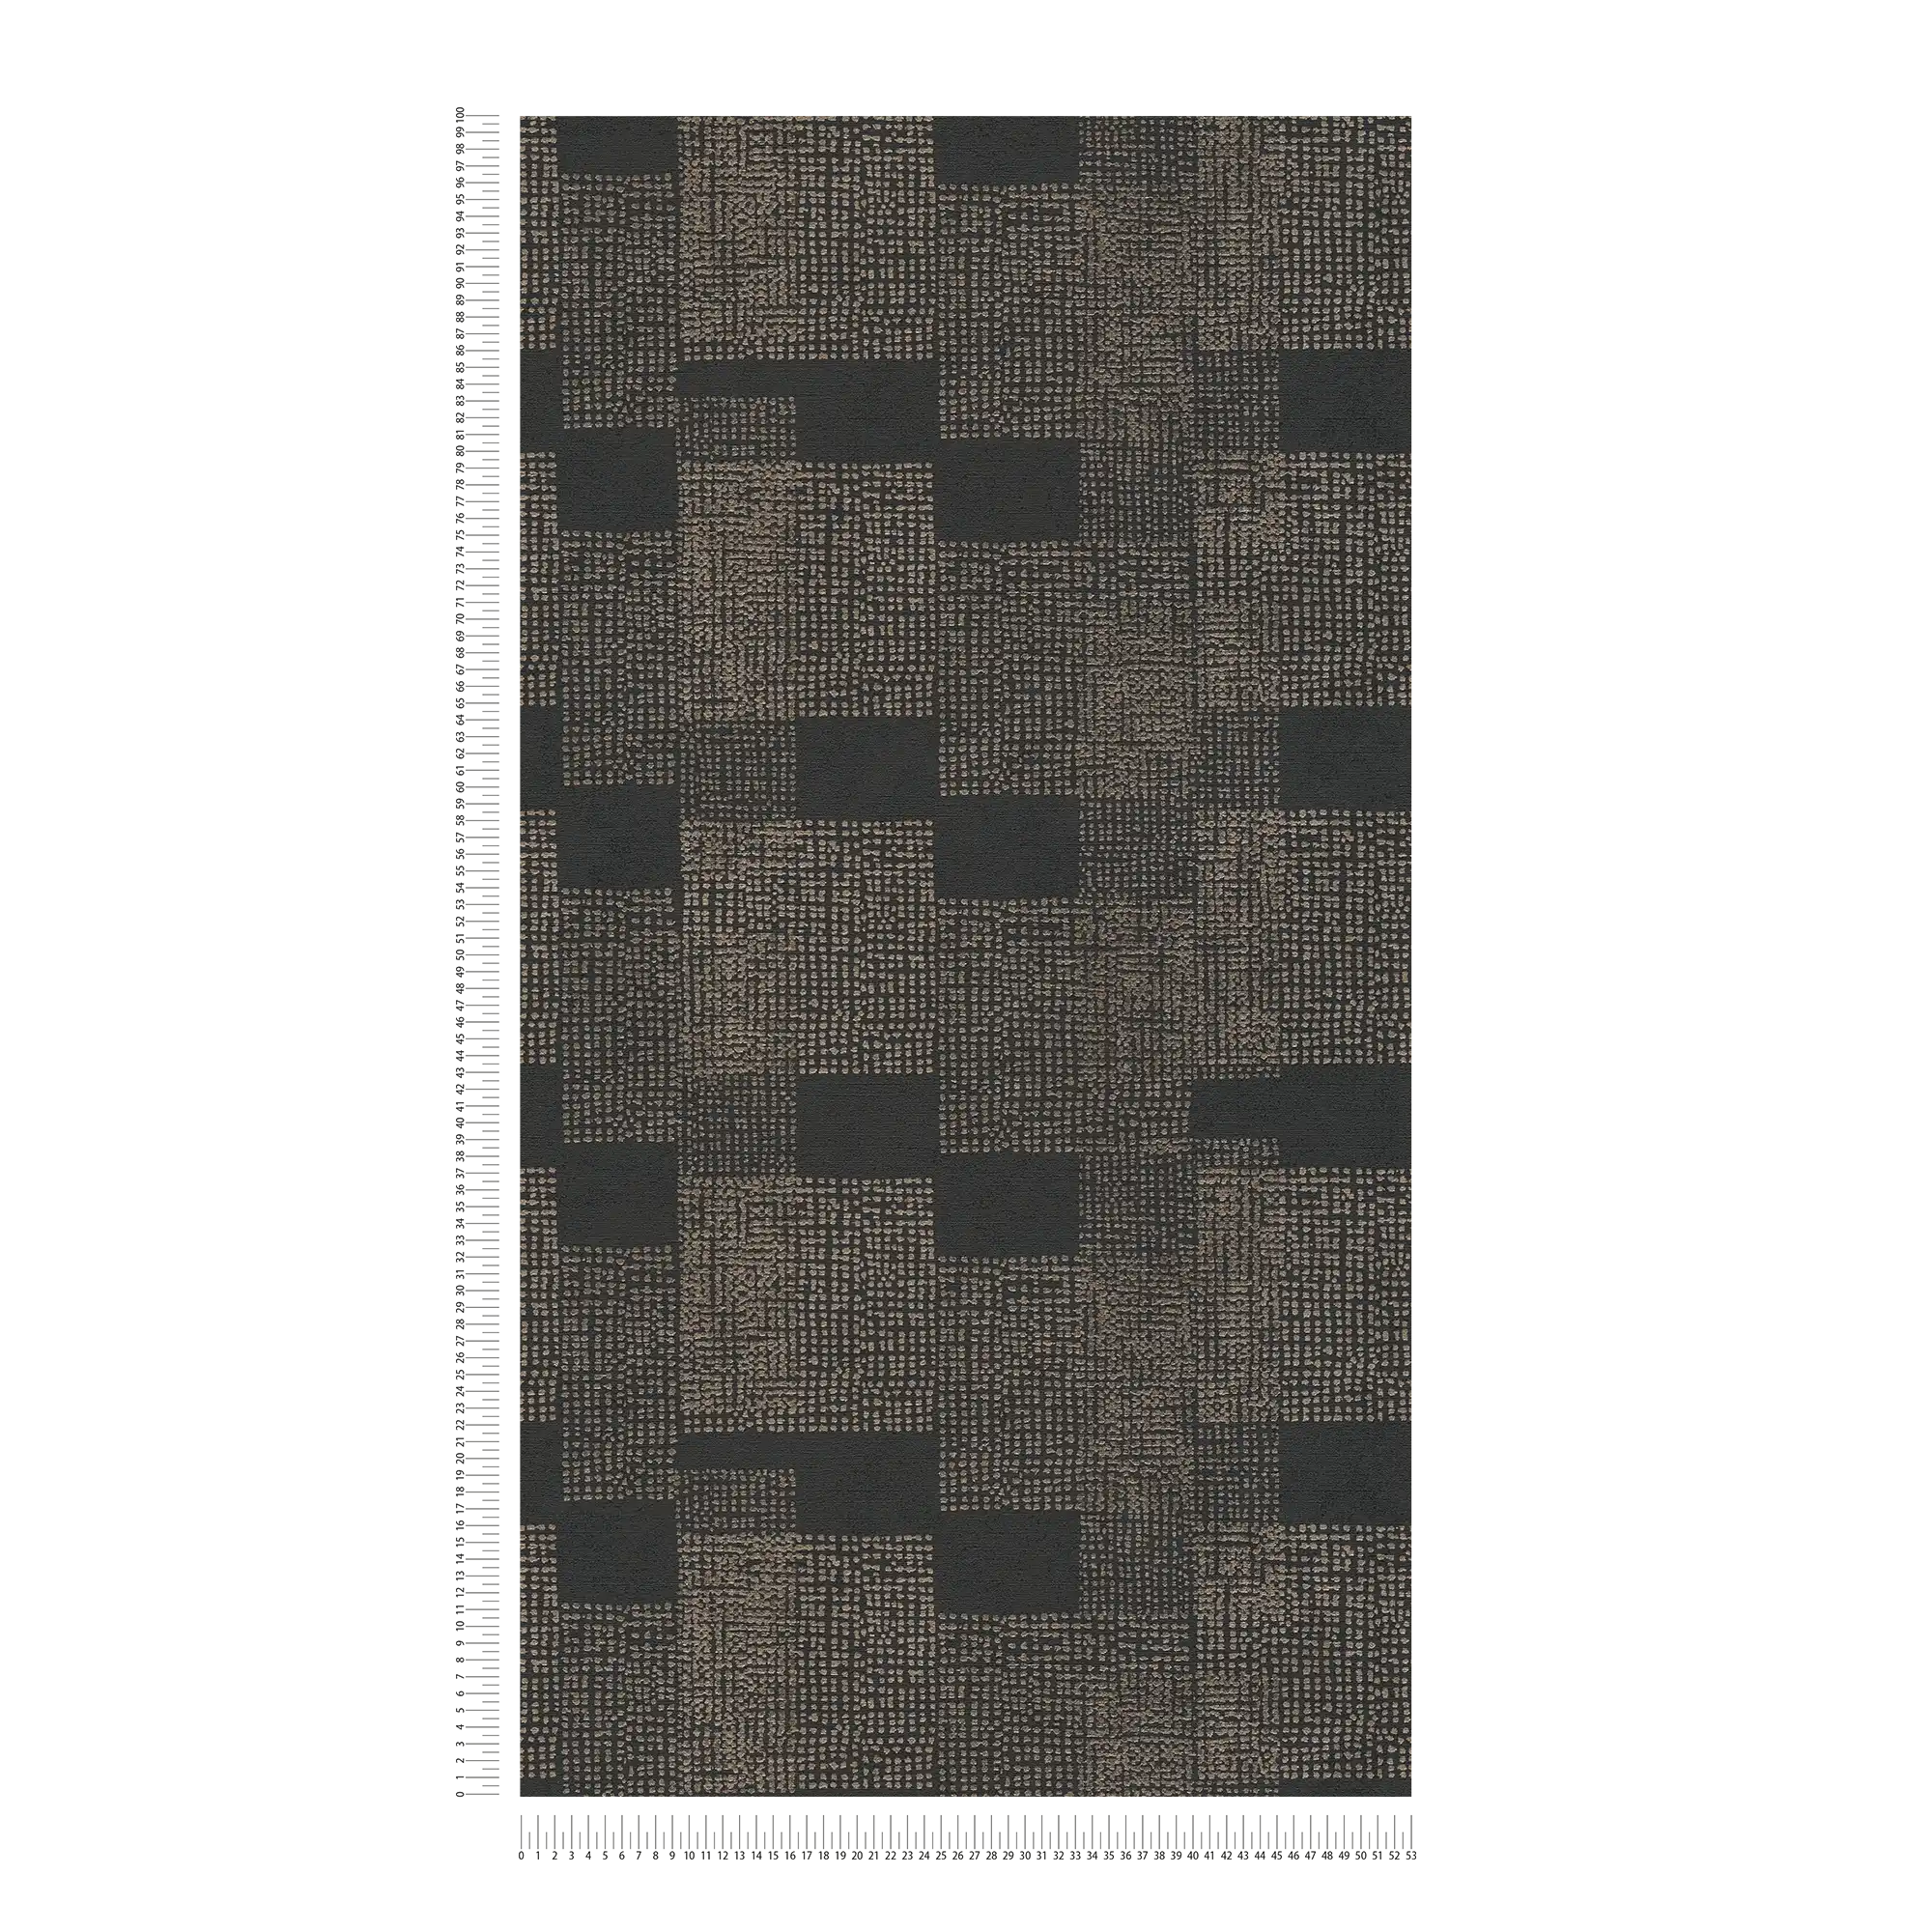             Pattern wallpaper ethnic design - black, grey, metallic
        